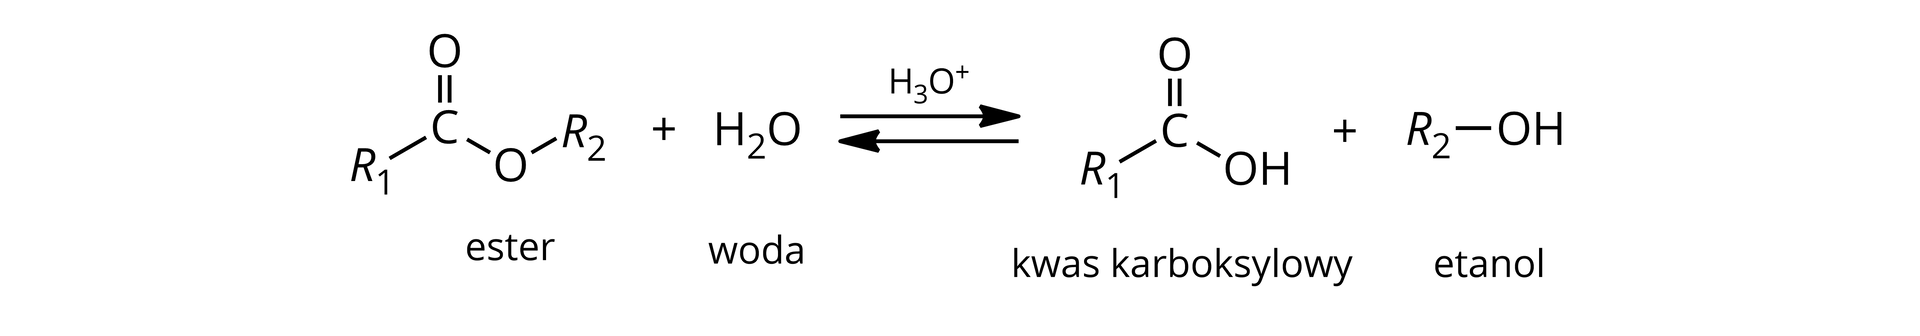 Ilustracja przedstawiająca schemat reakcji hydrolizy kwasowej estru. Cząsteczka estru zbudowana z grupy R1 związanej z atomem węgla połączonym za pomocą wiązania podwójnego z atomem tlenu i za pomocą wiązania pojedynczego z drugim atomem tlenu podstawionym grupą R2. Dodać cząsteczka wody. Strzałki równowagowe, nad strzałkami kation H3O+. Za strzałkami cząsteczka kwasu karboksylowego zbudowanego z grupy R1 związanej z atomem węgla połączonym za pomocą wiązania podwójnego z atomem tlenu oraz za pomocą wiązania pojedynczego z grupą hydroksylową OH. Dodać cząsteczka alkoholu zbudowana z podstawnika R2 połączonego z grupą hydroksylową OH.